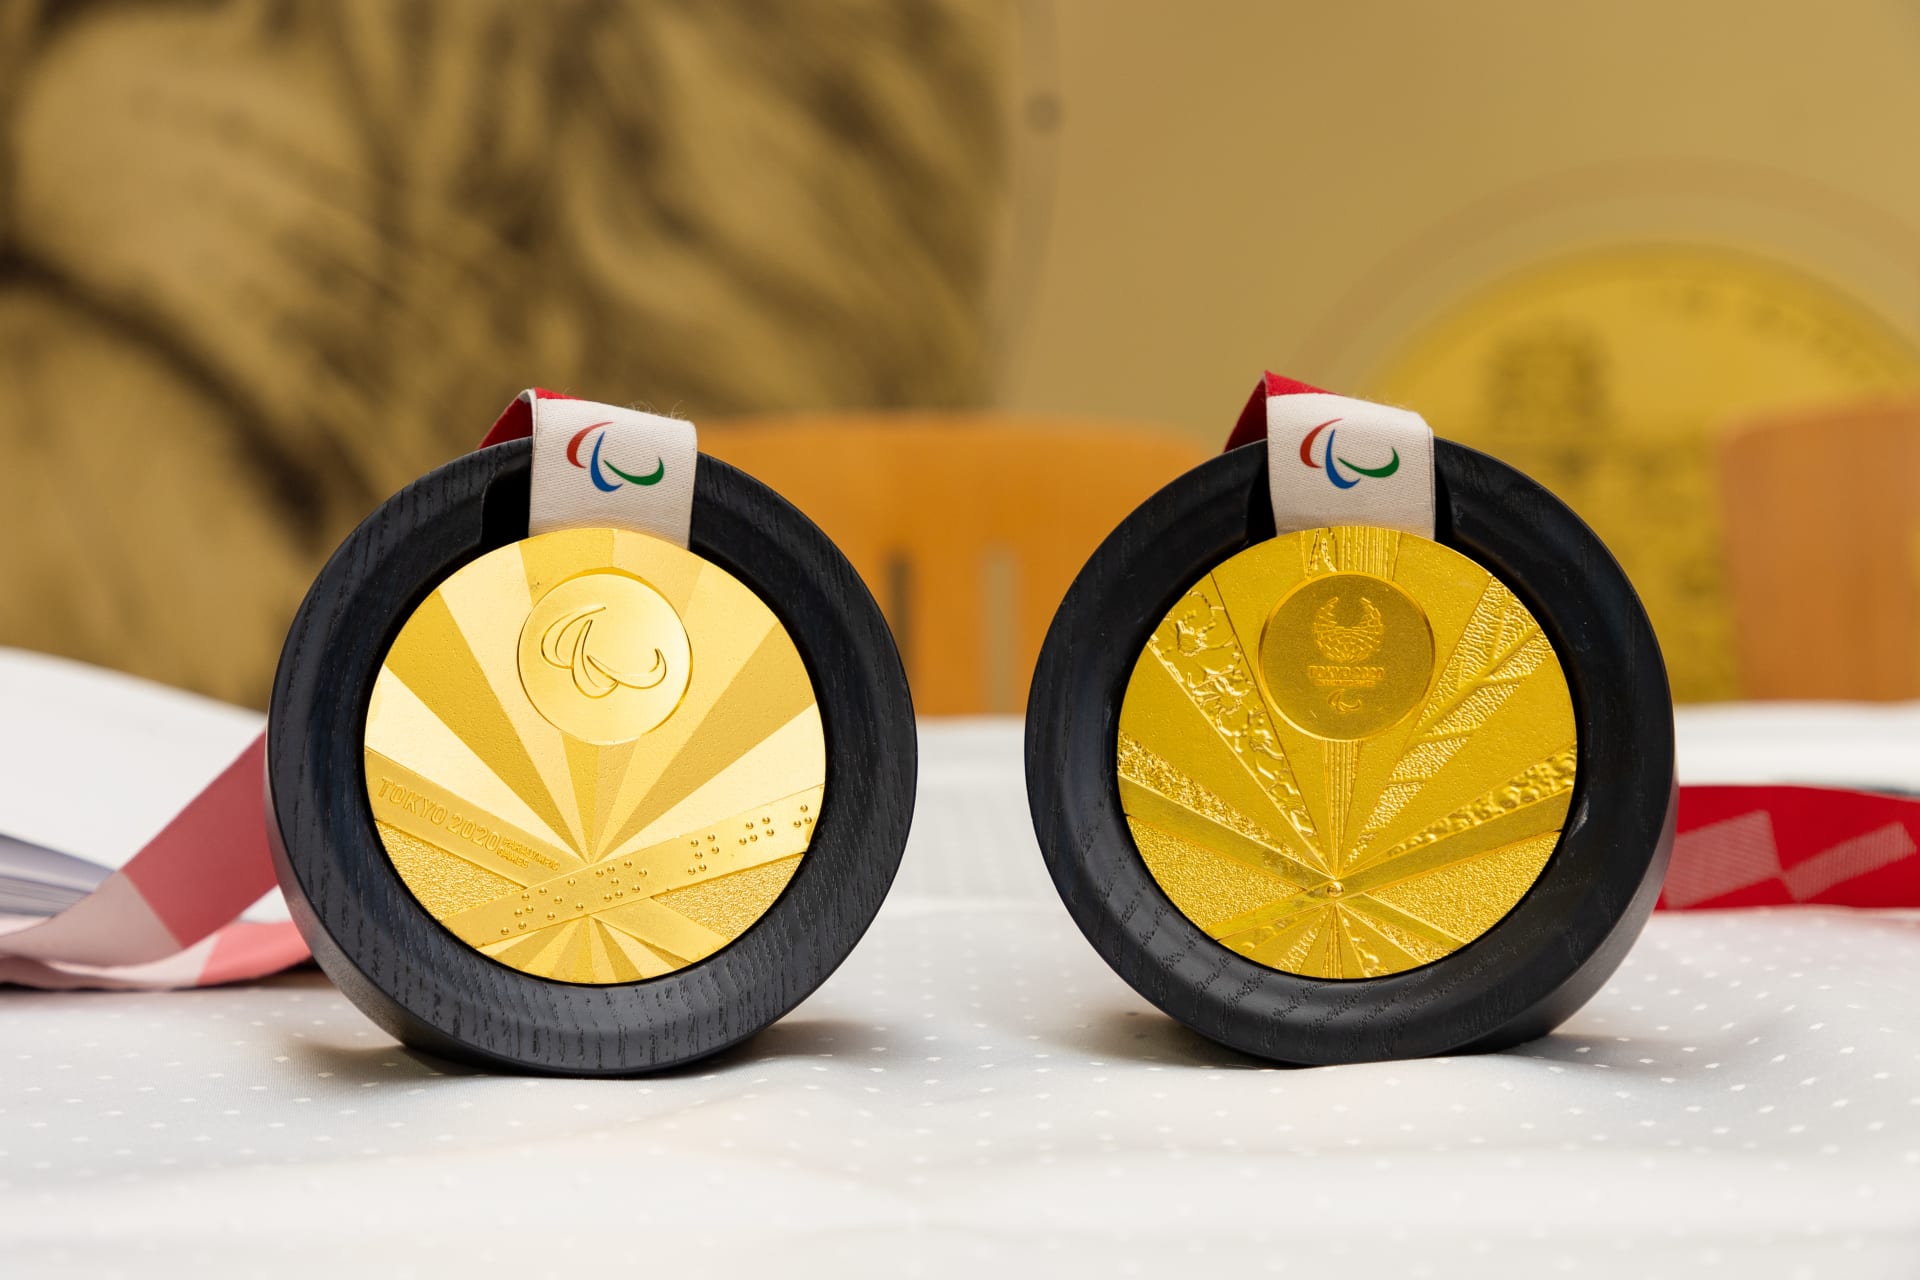 Mincovna vzdává hold zlatým medailistům z Tokia 